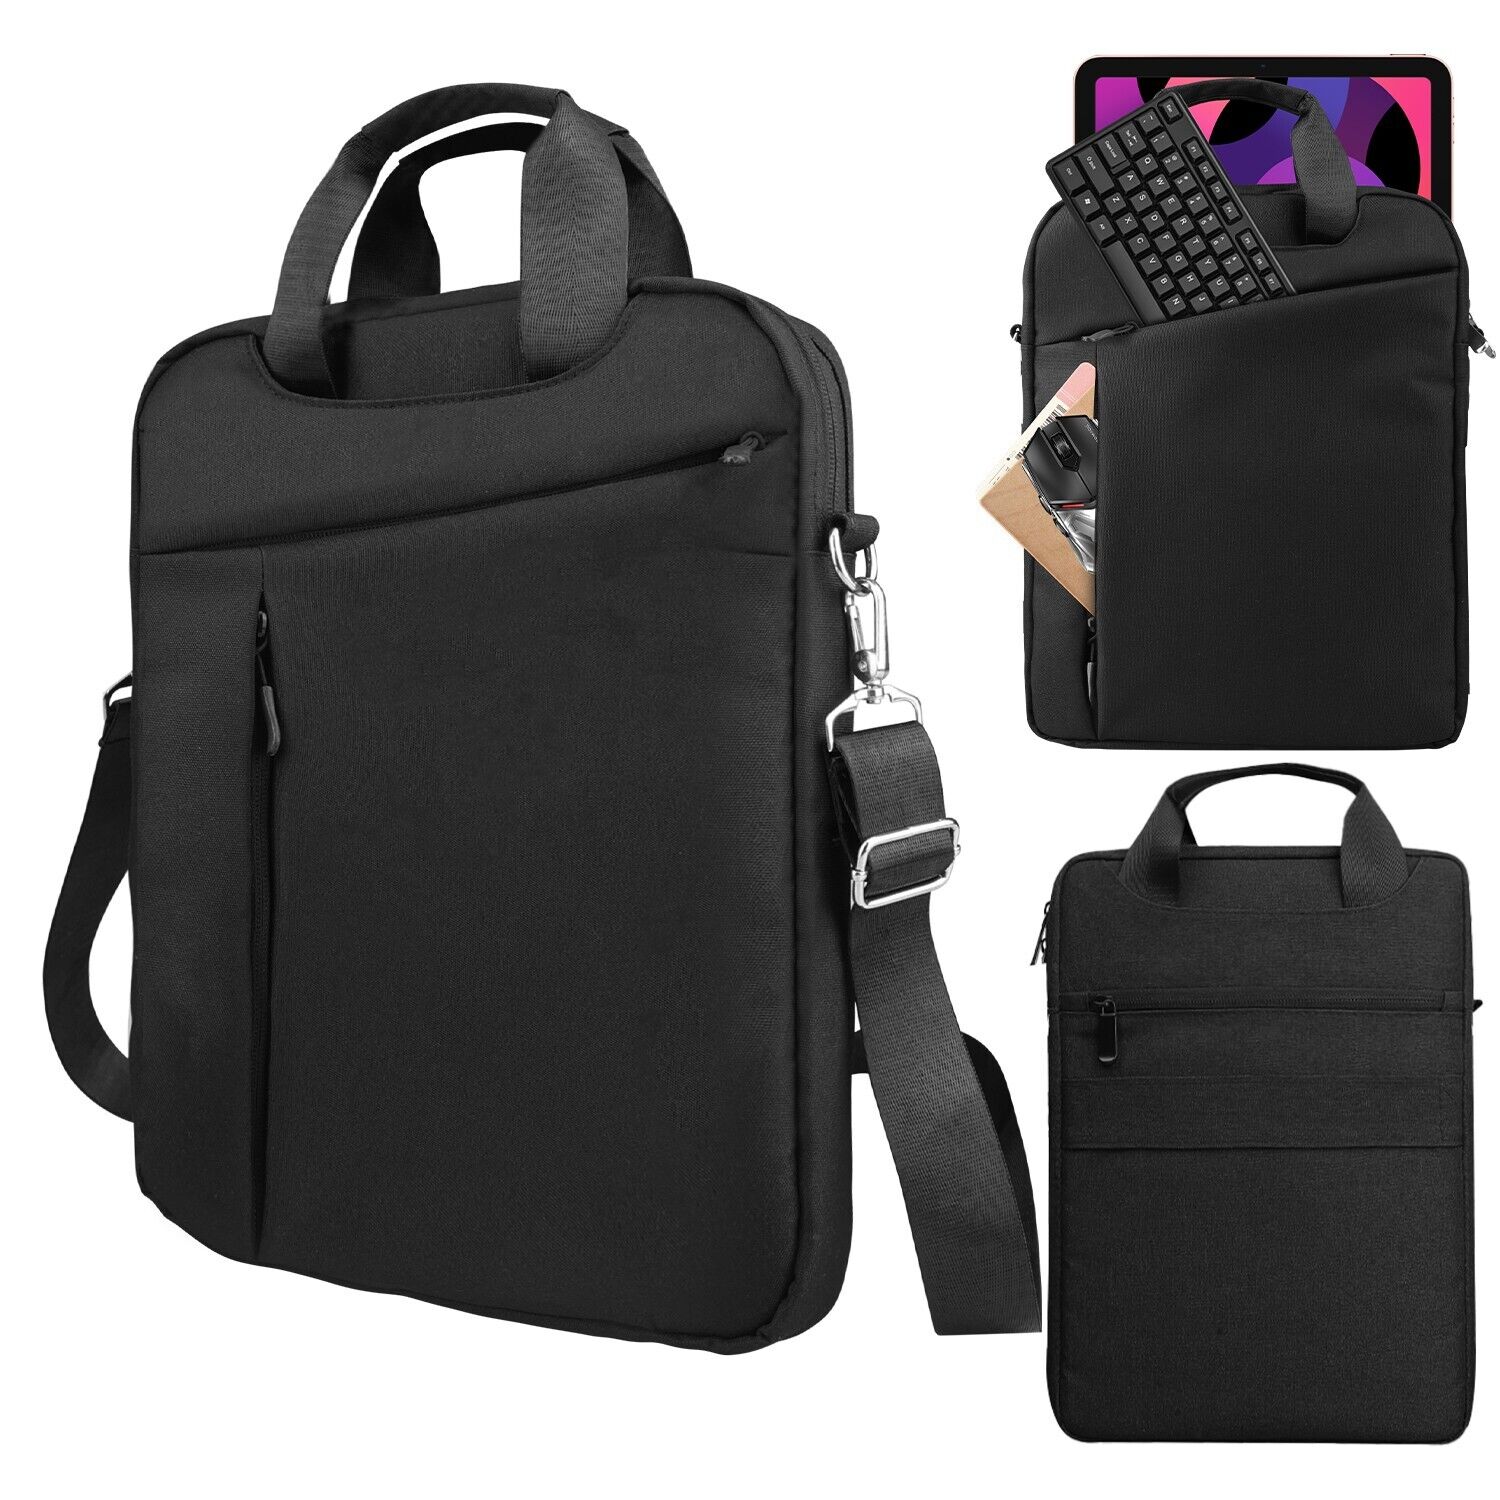 Crossbody Laptop Bag Vertical Simple Leisure Black Waterproof Portable Durable